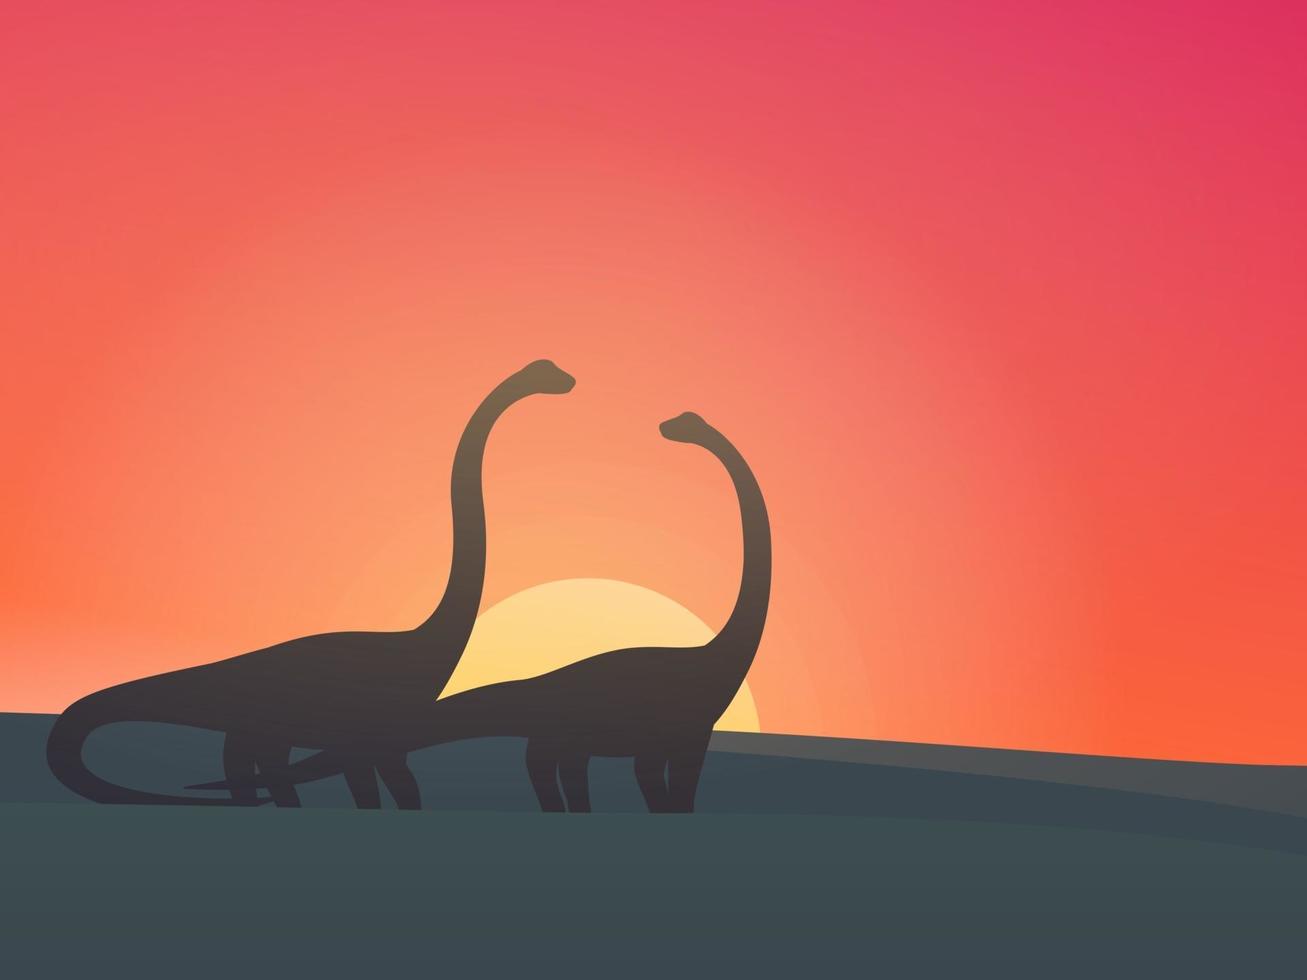 dinossauros, ilustração vetorial de saurópodes vetor